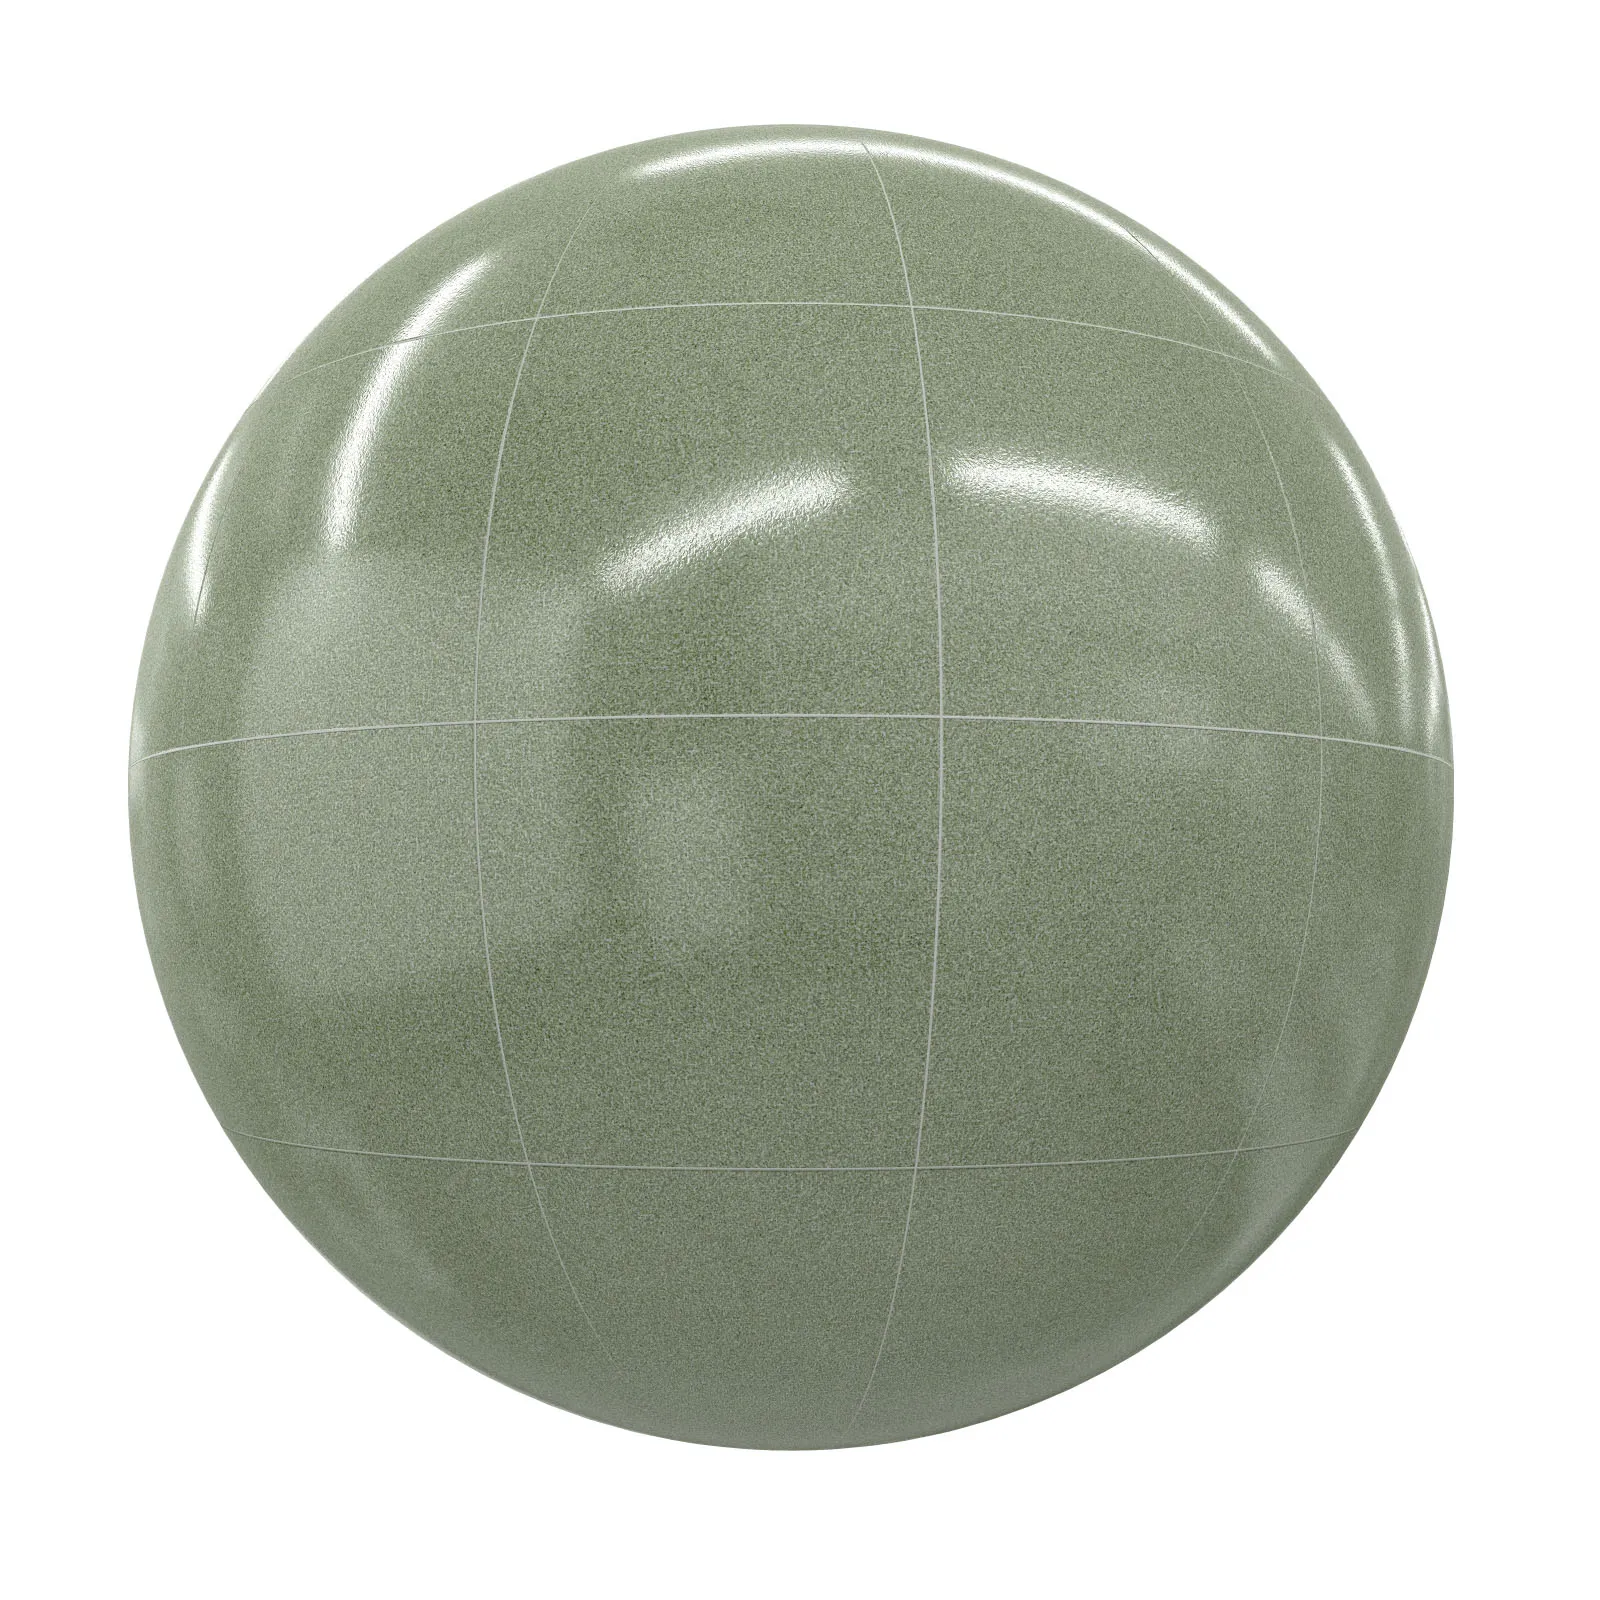 PBR CGAXIS TEXTURES – TILES – Green Tiles 2